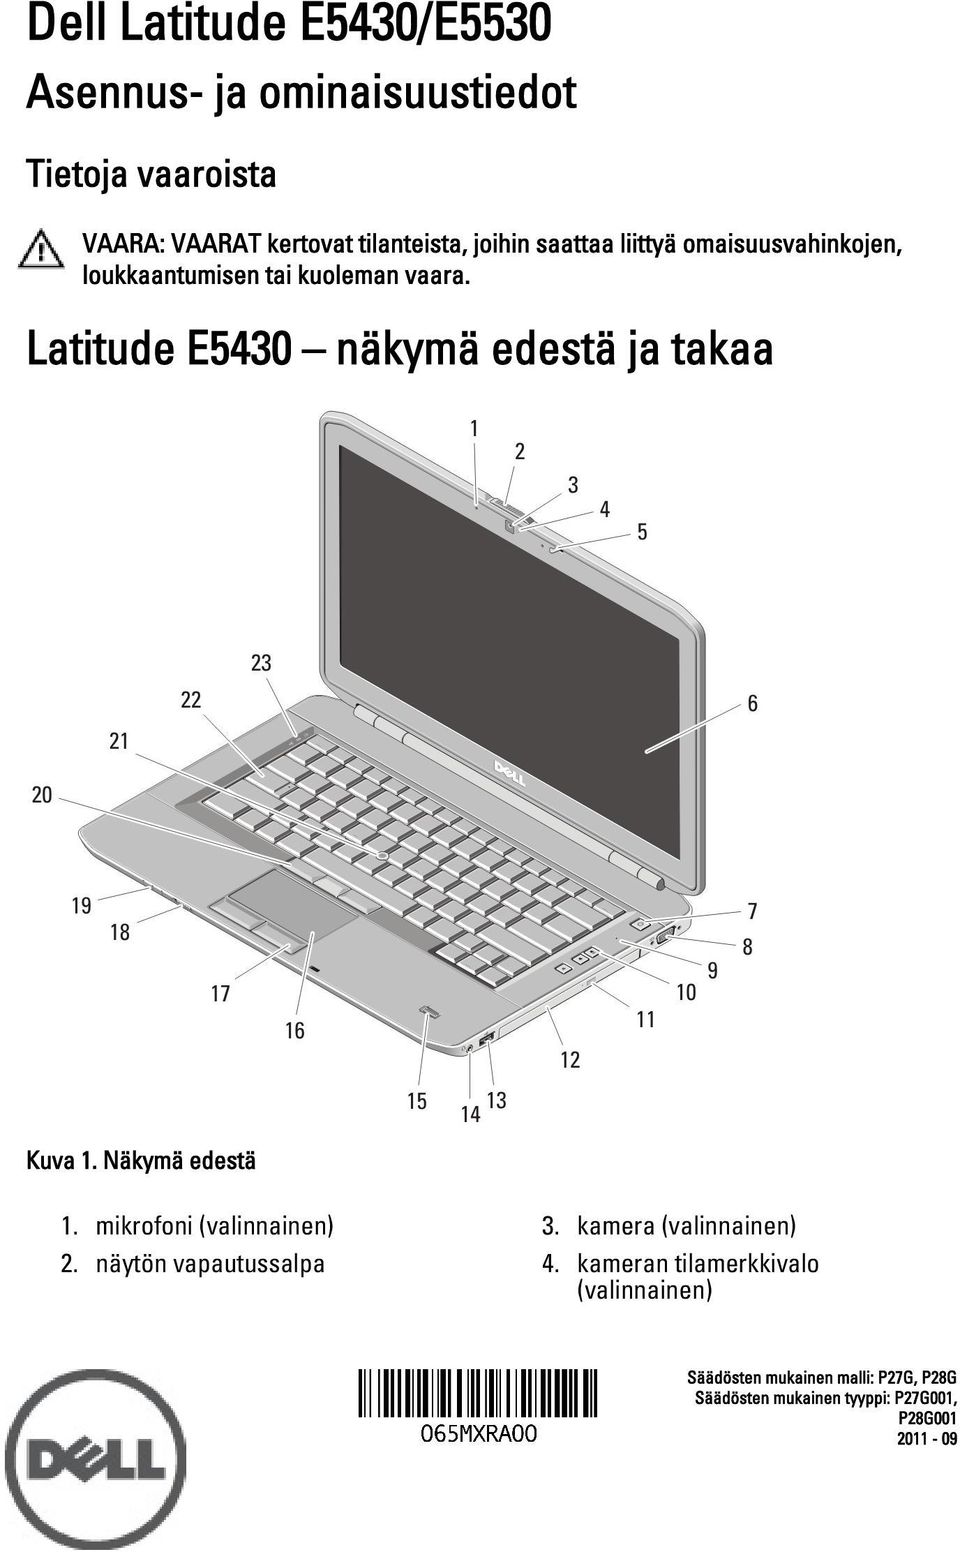 Latitude E5430 näkymä edestä ja takaa Kuva 1. Näkymä edestä 1. mikrofoni 2. näytön vapautussalpa 3.